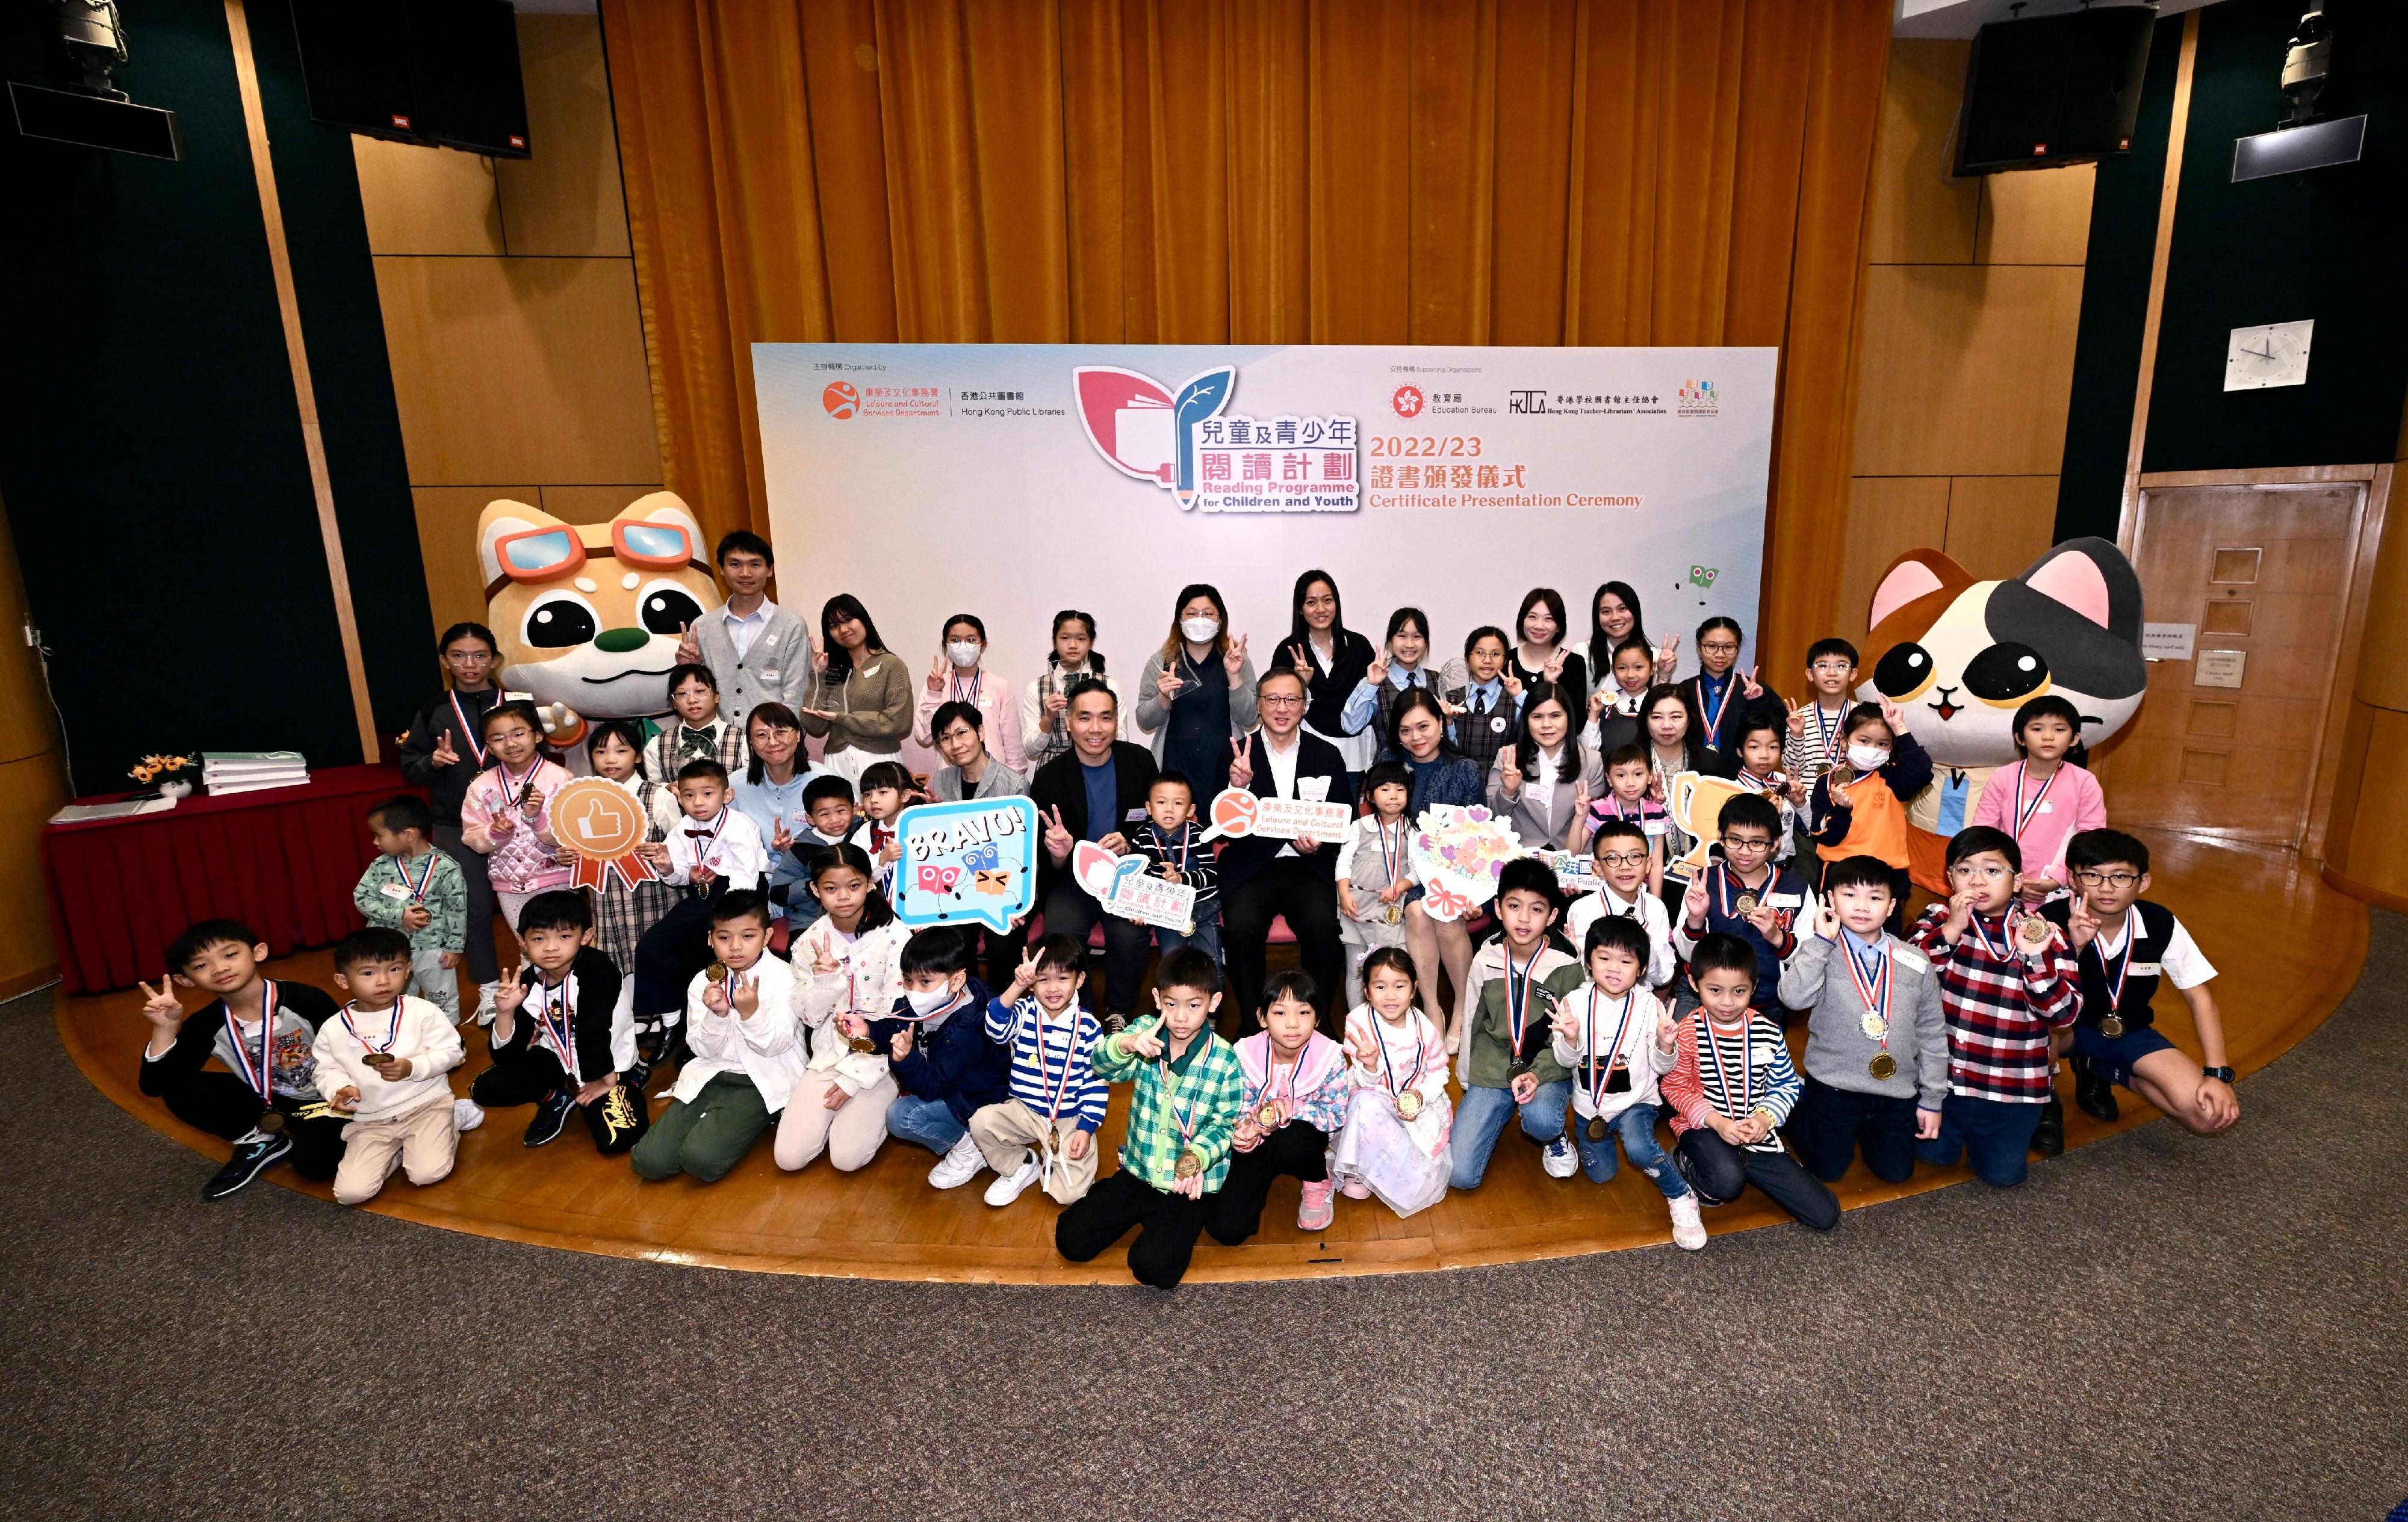 由康樂及文化事務署香港公共圖書館舉辦的「兒童及青少年閱讀計劃」證書頒發儀式今日（十一月十八日）在香港中央圖書館舉行。圖示一眾嘉賓與得獎的兒童及青少年讀者及學校代表合照。